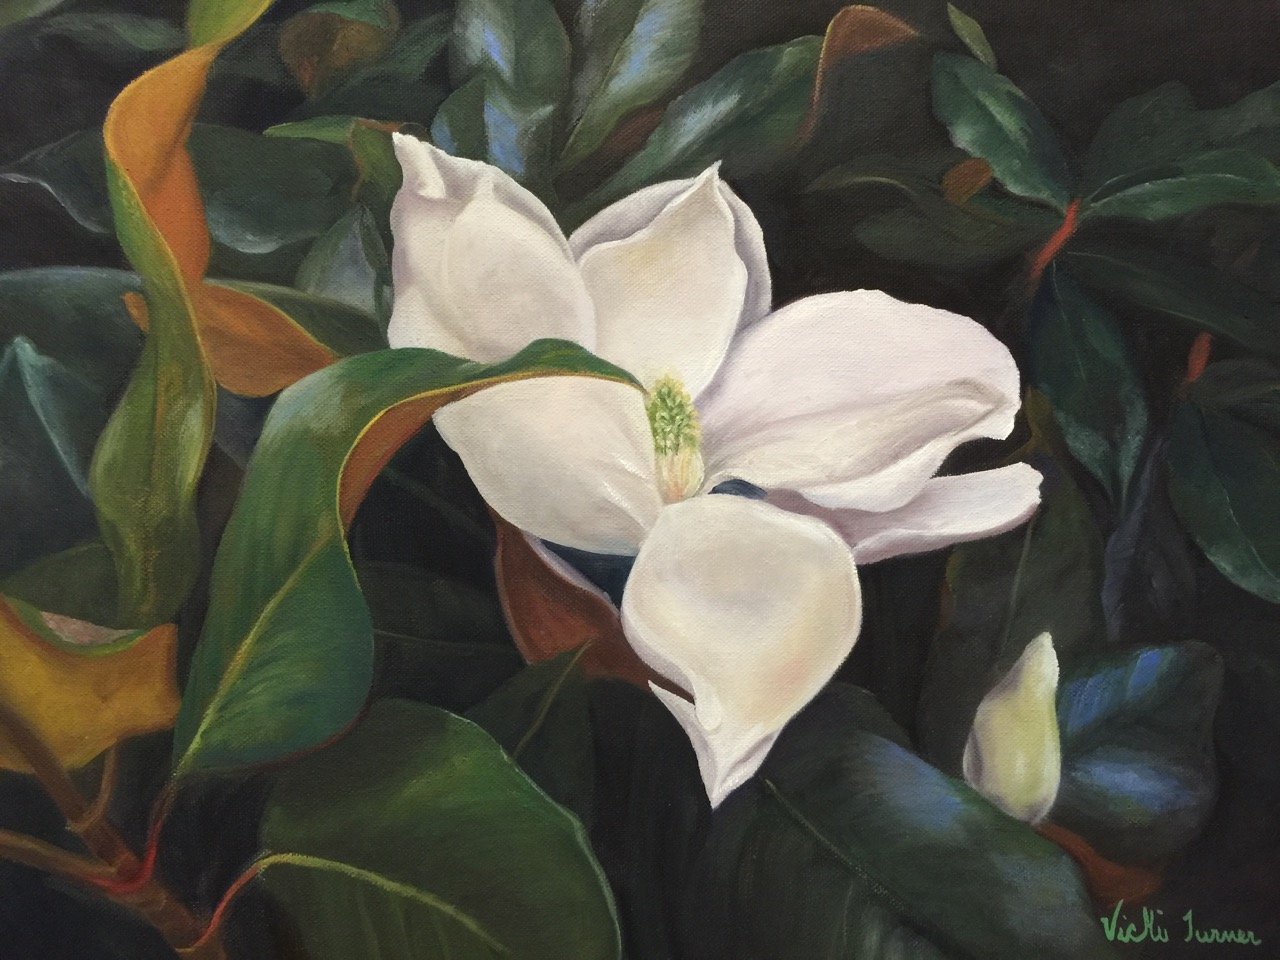 Magnolia Bloom Vicki Turner.jpeg